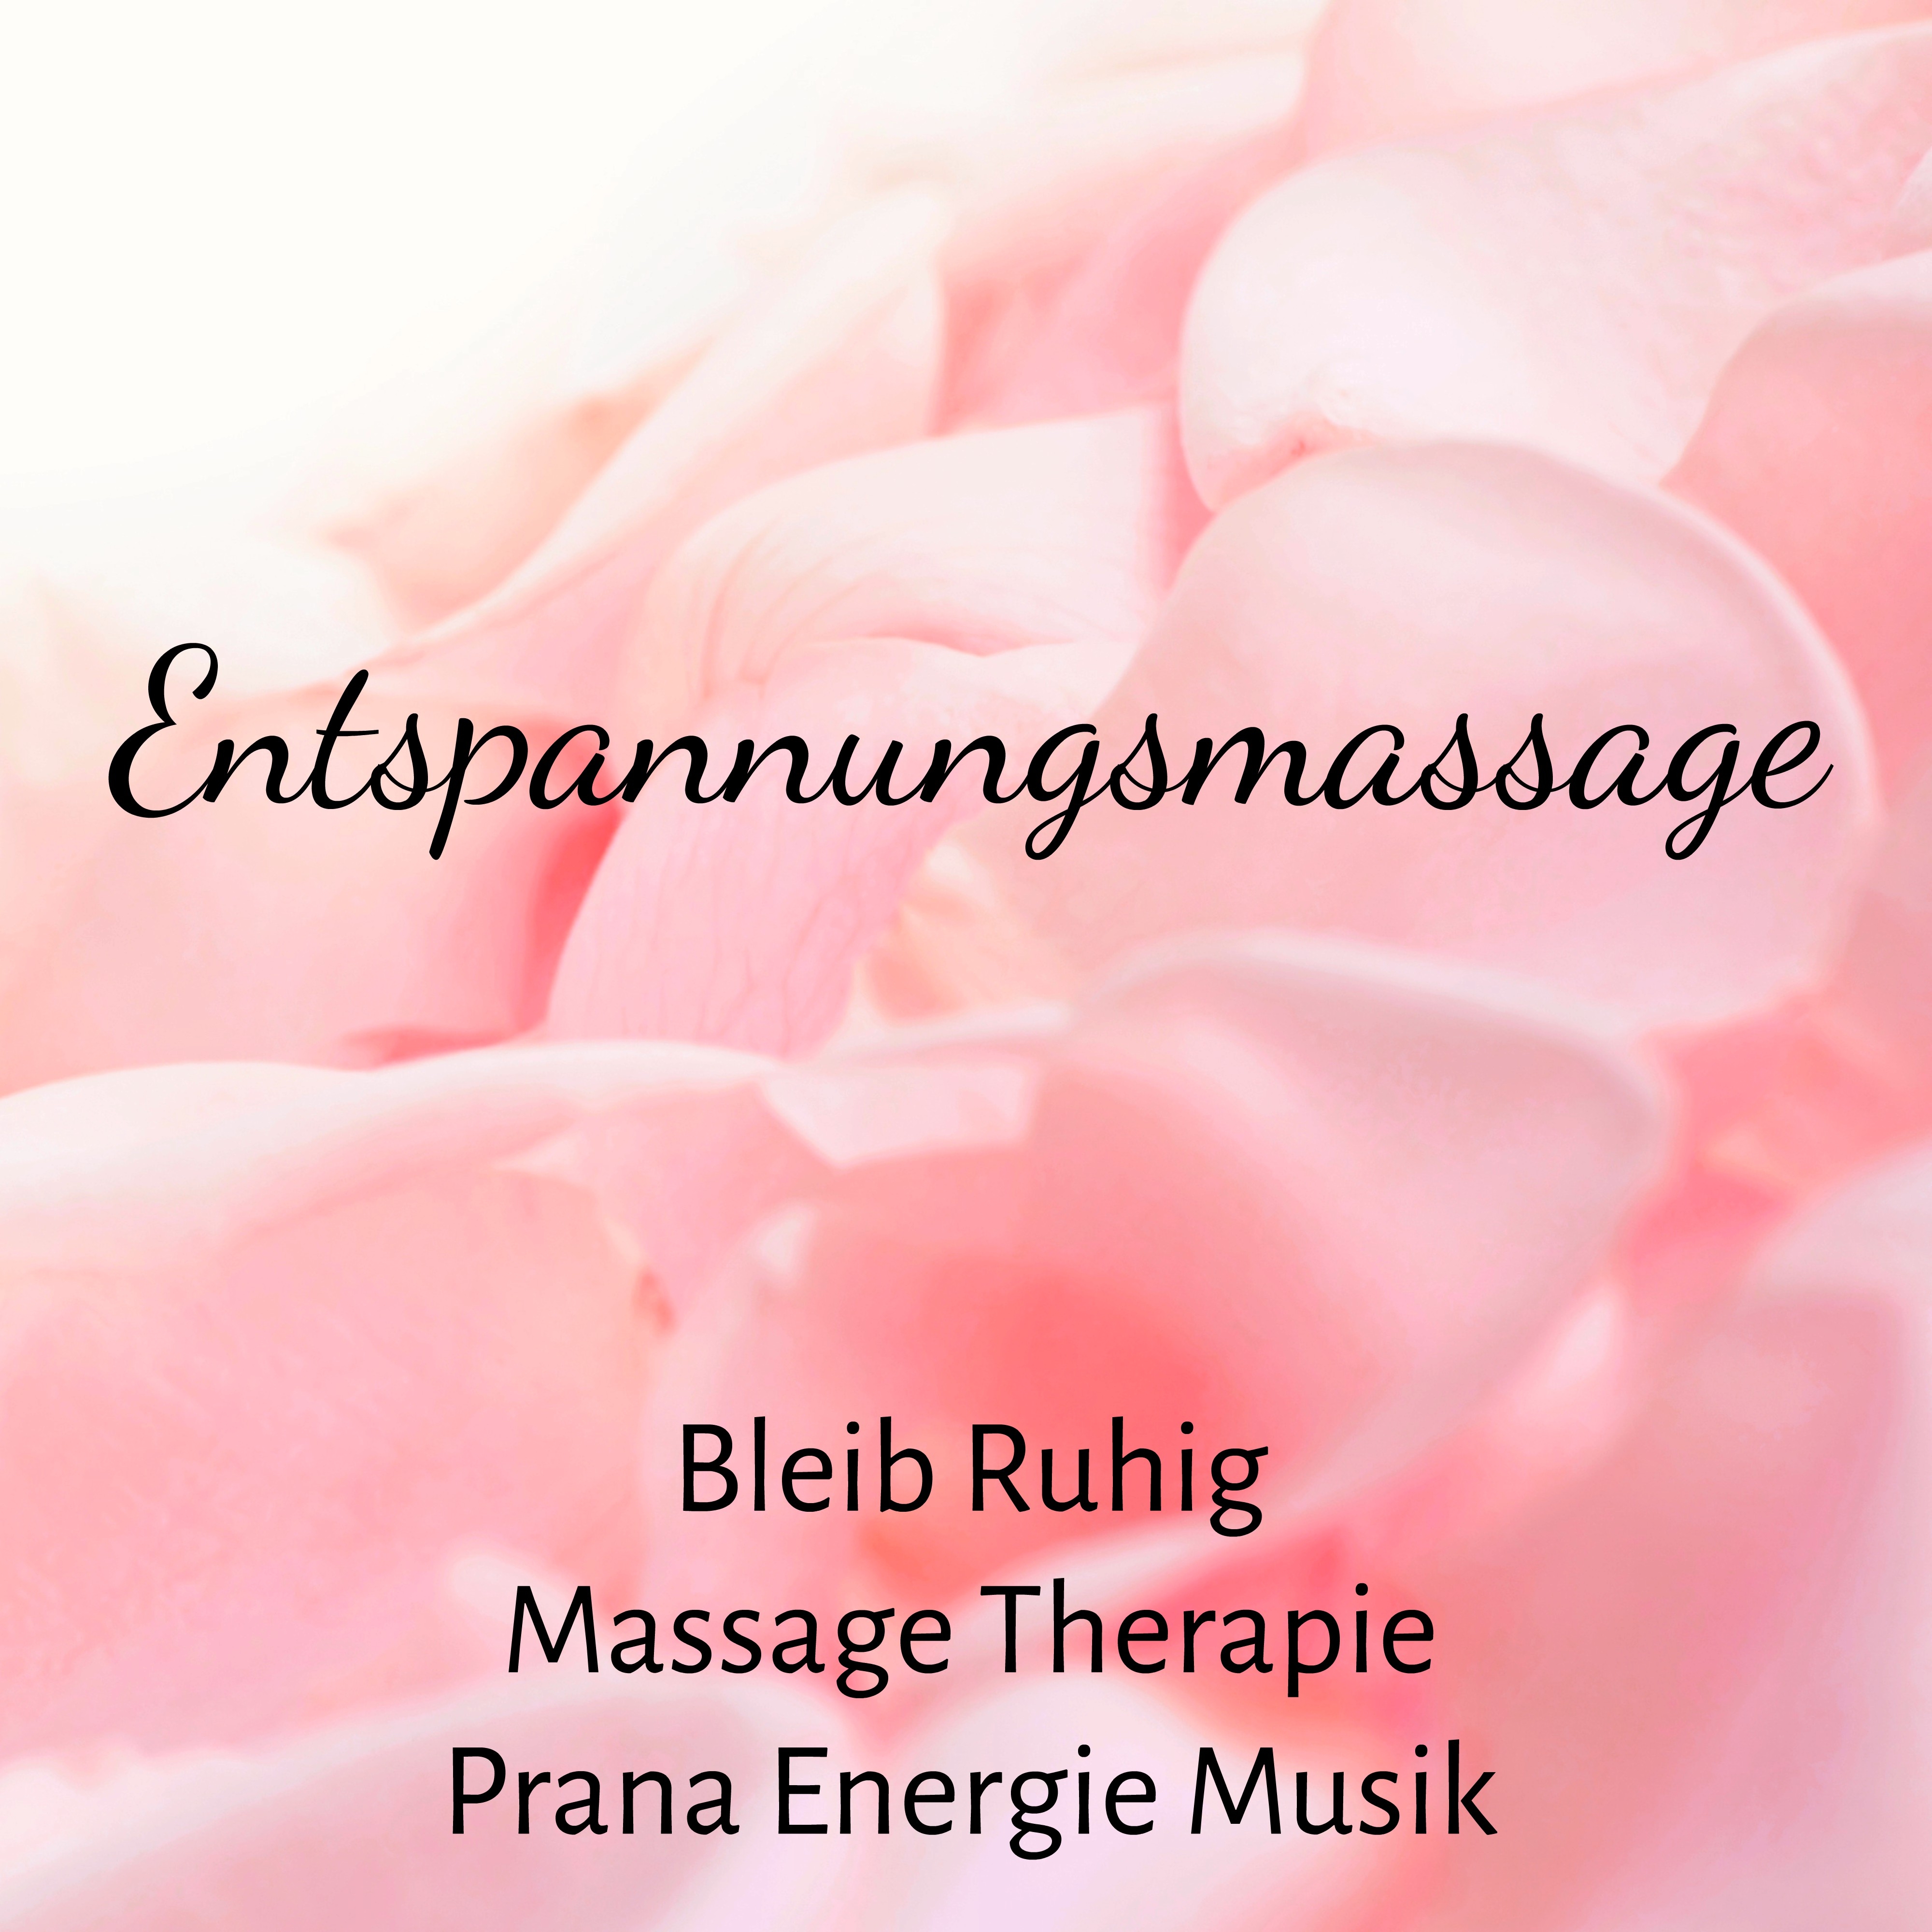 Entspannungsmassage - Bleib Ruhig Massage Therapie Prana Energie Musik mit Achtsamkeitsmeditation Instrumental Gehirnwellen Geräusche